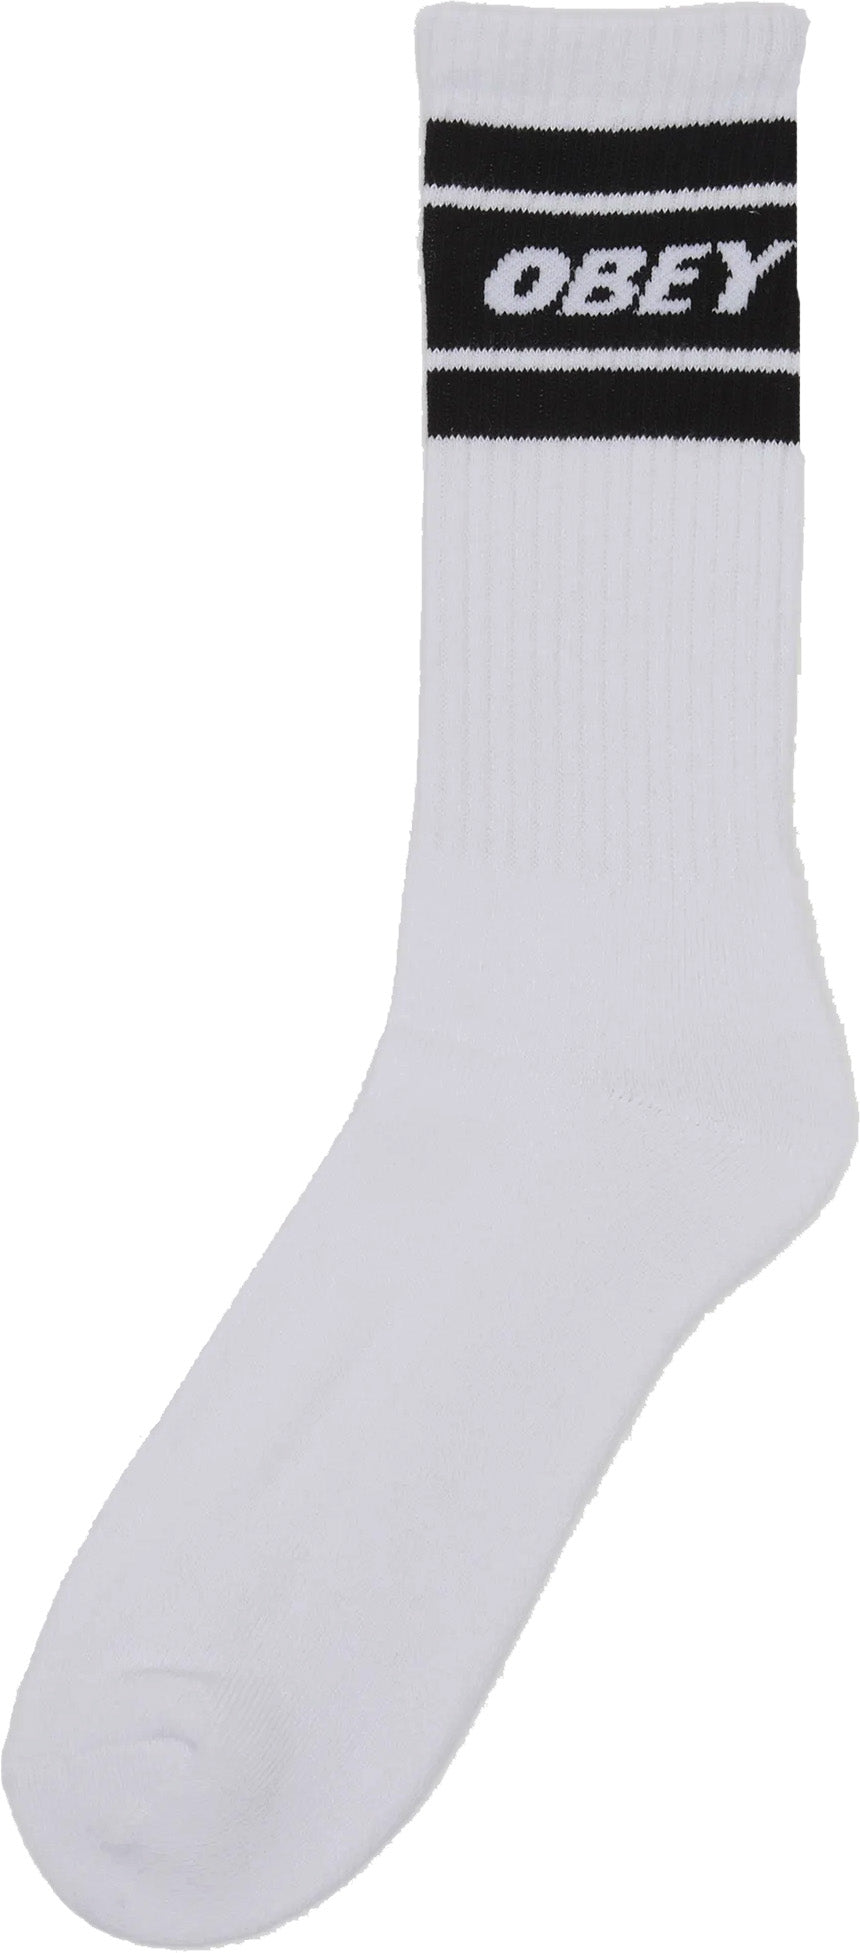  Obey Calze Cooper Ii Socks White Black Bianco Uomo - 1